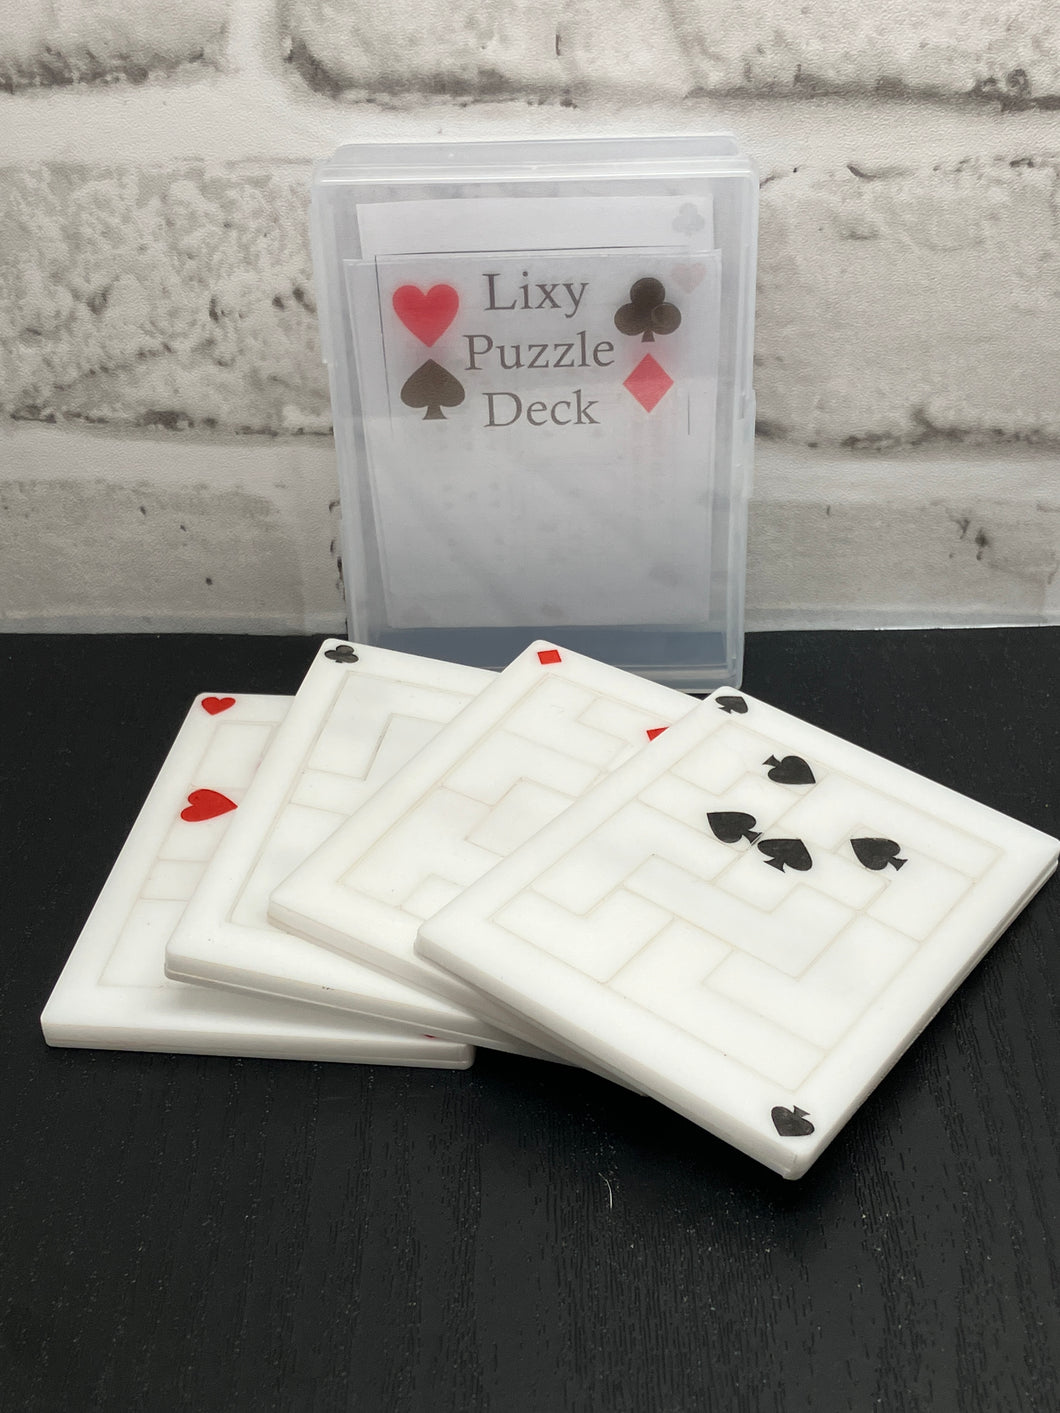 Lixy's Puzzle Deck